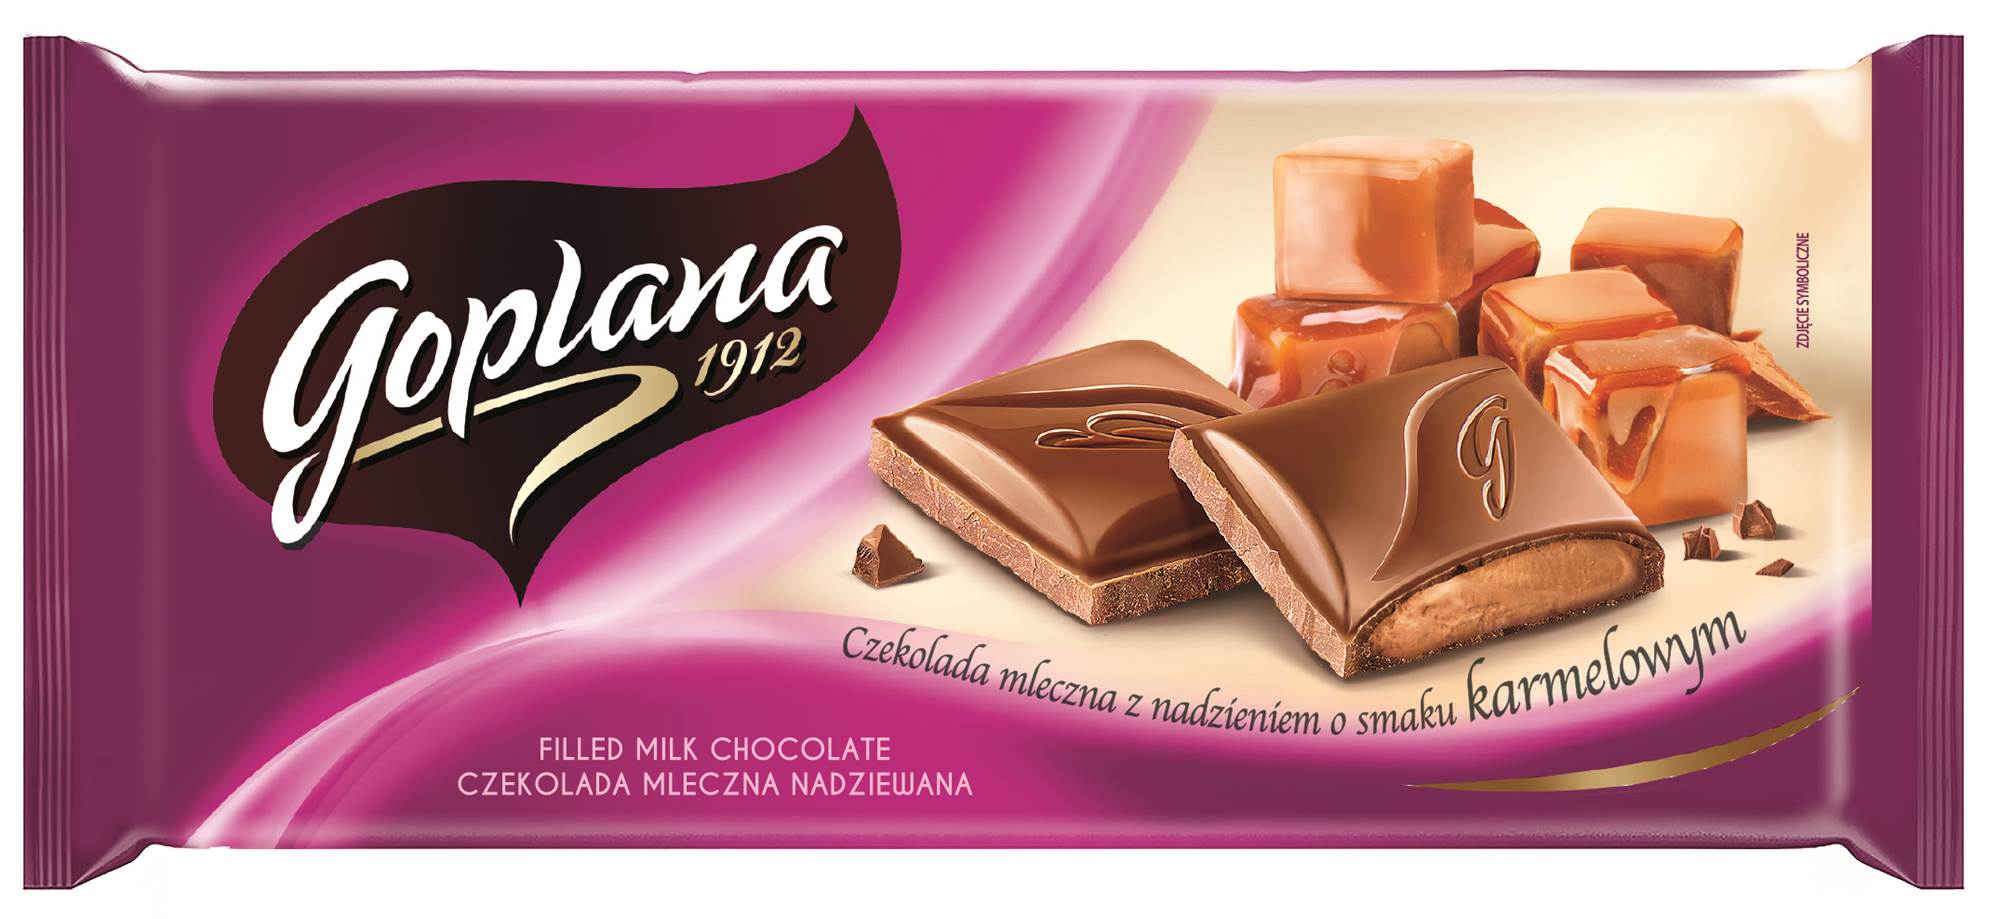 Nowe czekolady Goplana – truskawka i karmel